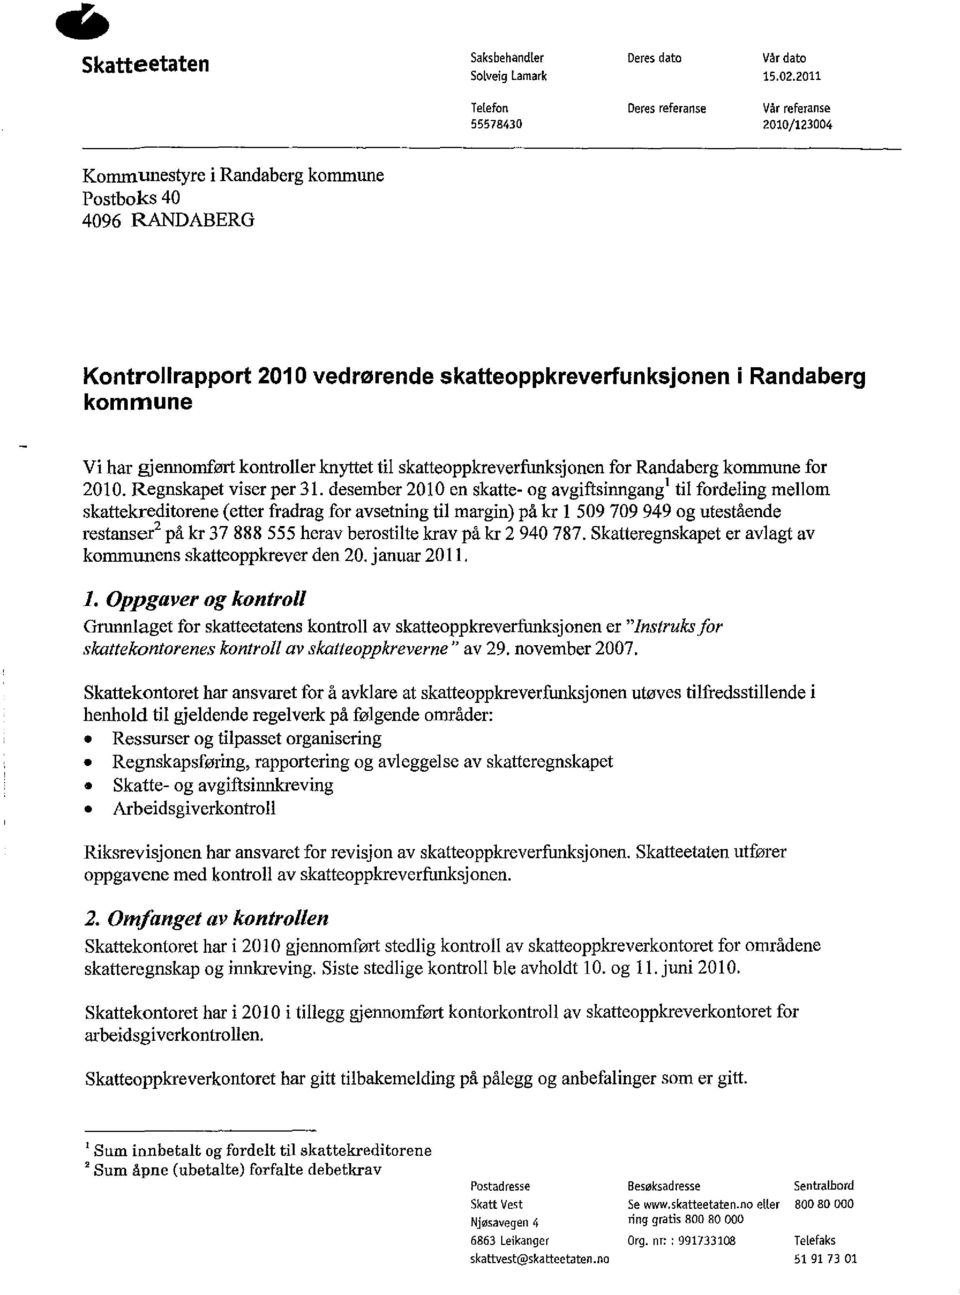 kommune Vi har gjennomført kontroller knyttet til skatteoppkreverfunksjonen for Randaberg kommune for 2010. Regnskapet viser per 31.